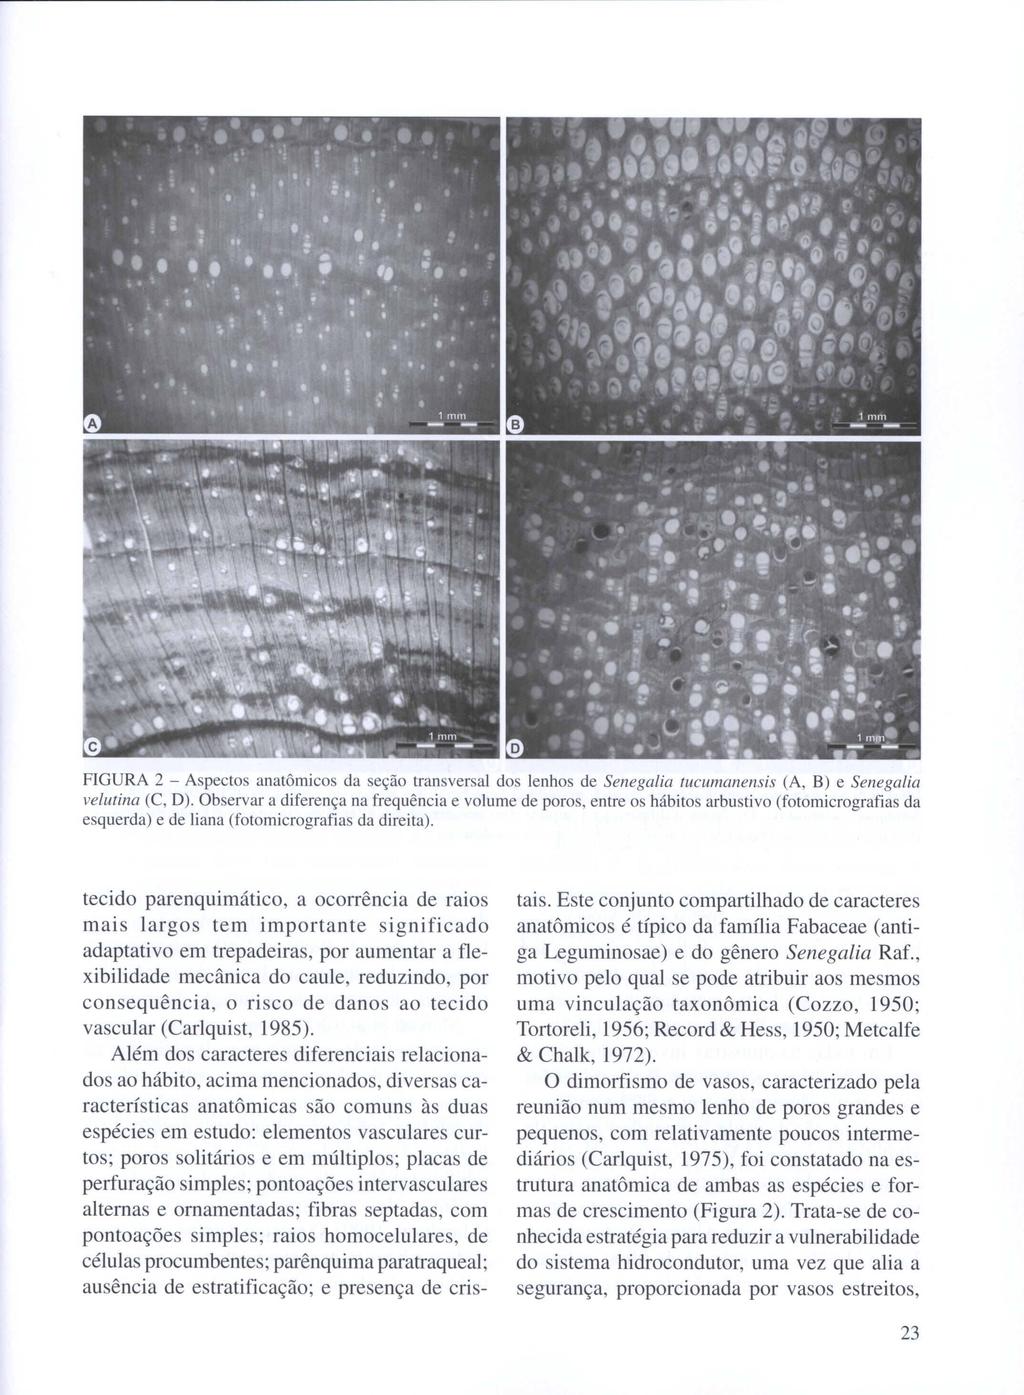 FIGURA 2 - Aspectos anatômicos da seção transversa] dos lenhos de Senegalia tucumanensis (A, B) e Senegalia velutina (C, D).